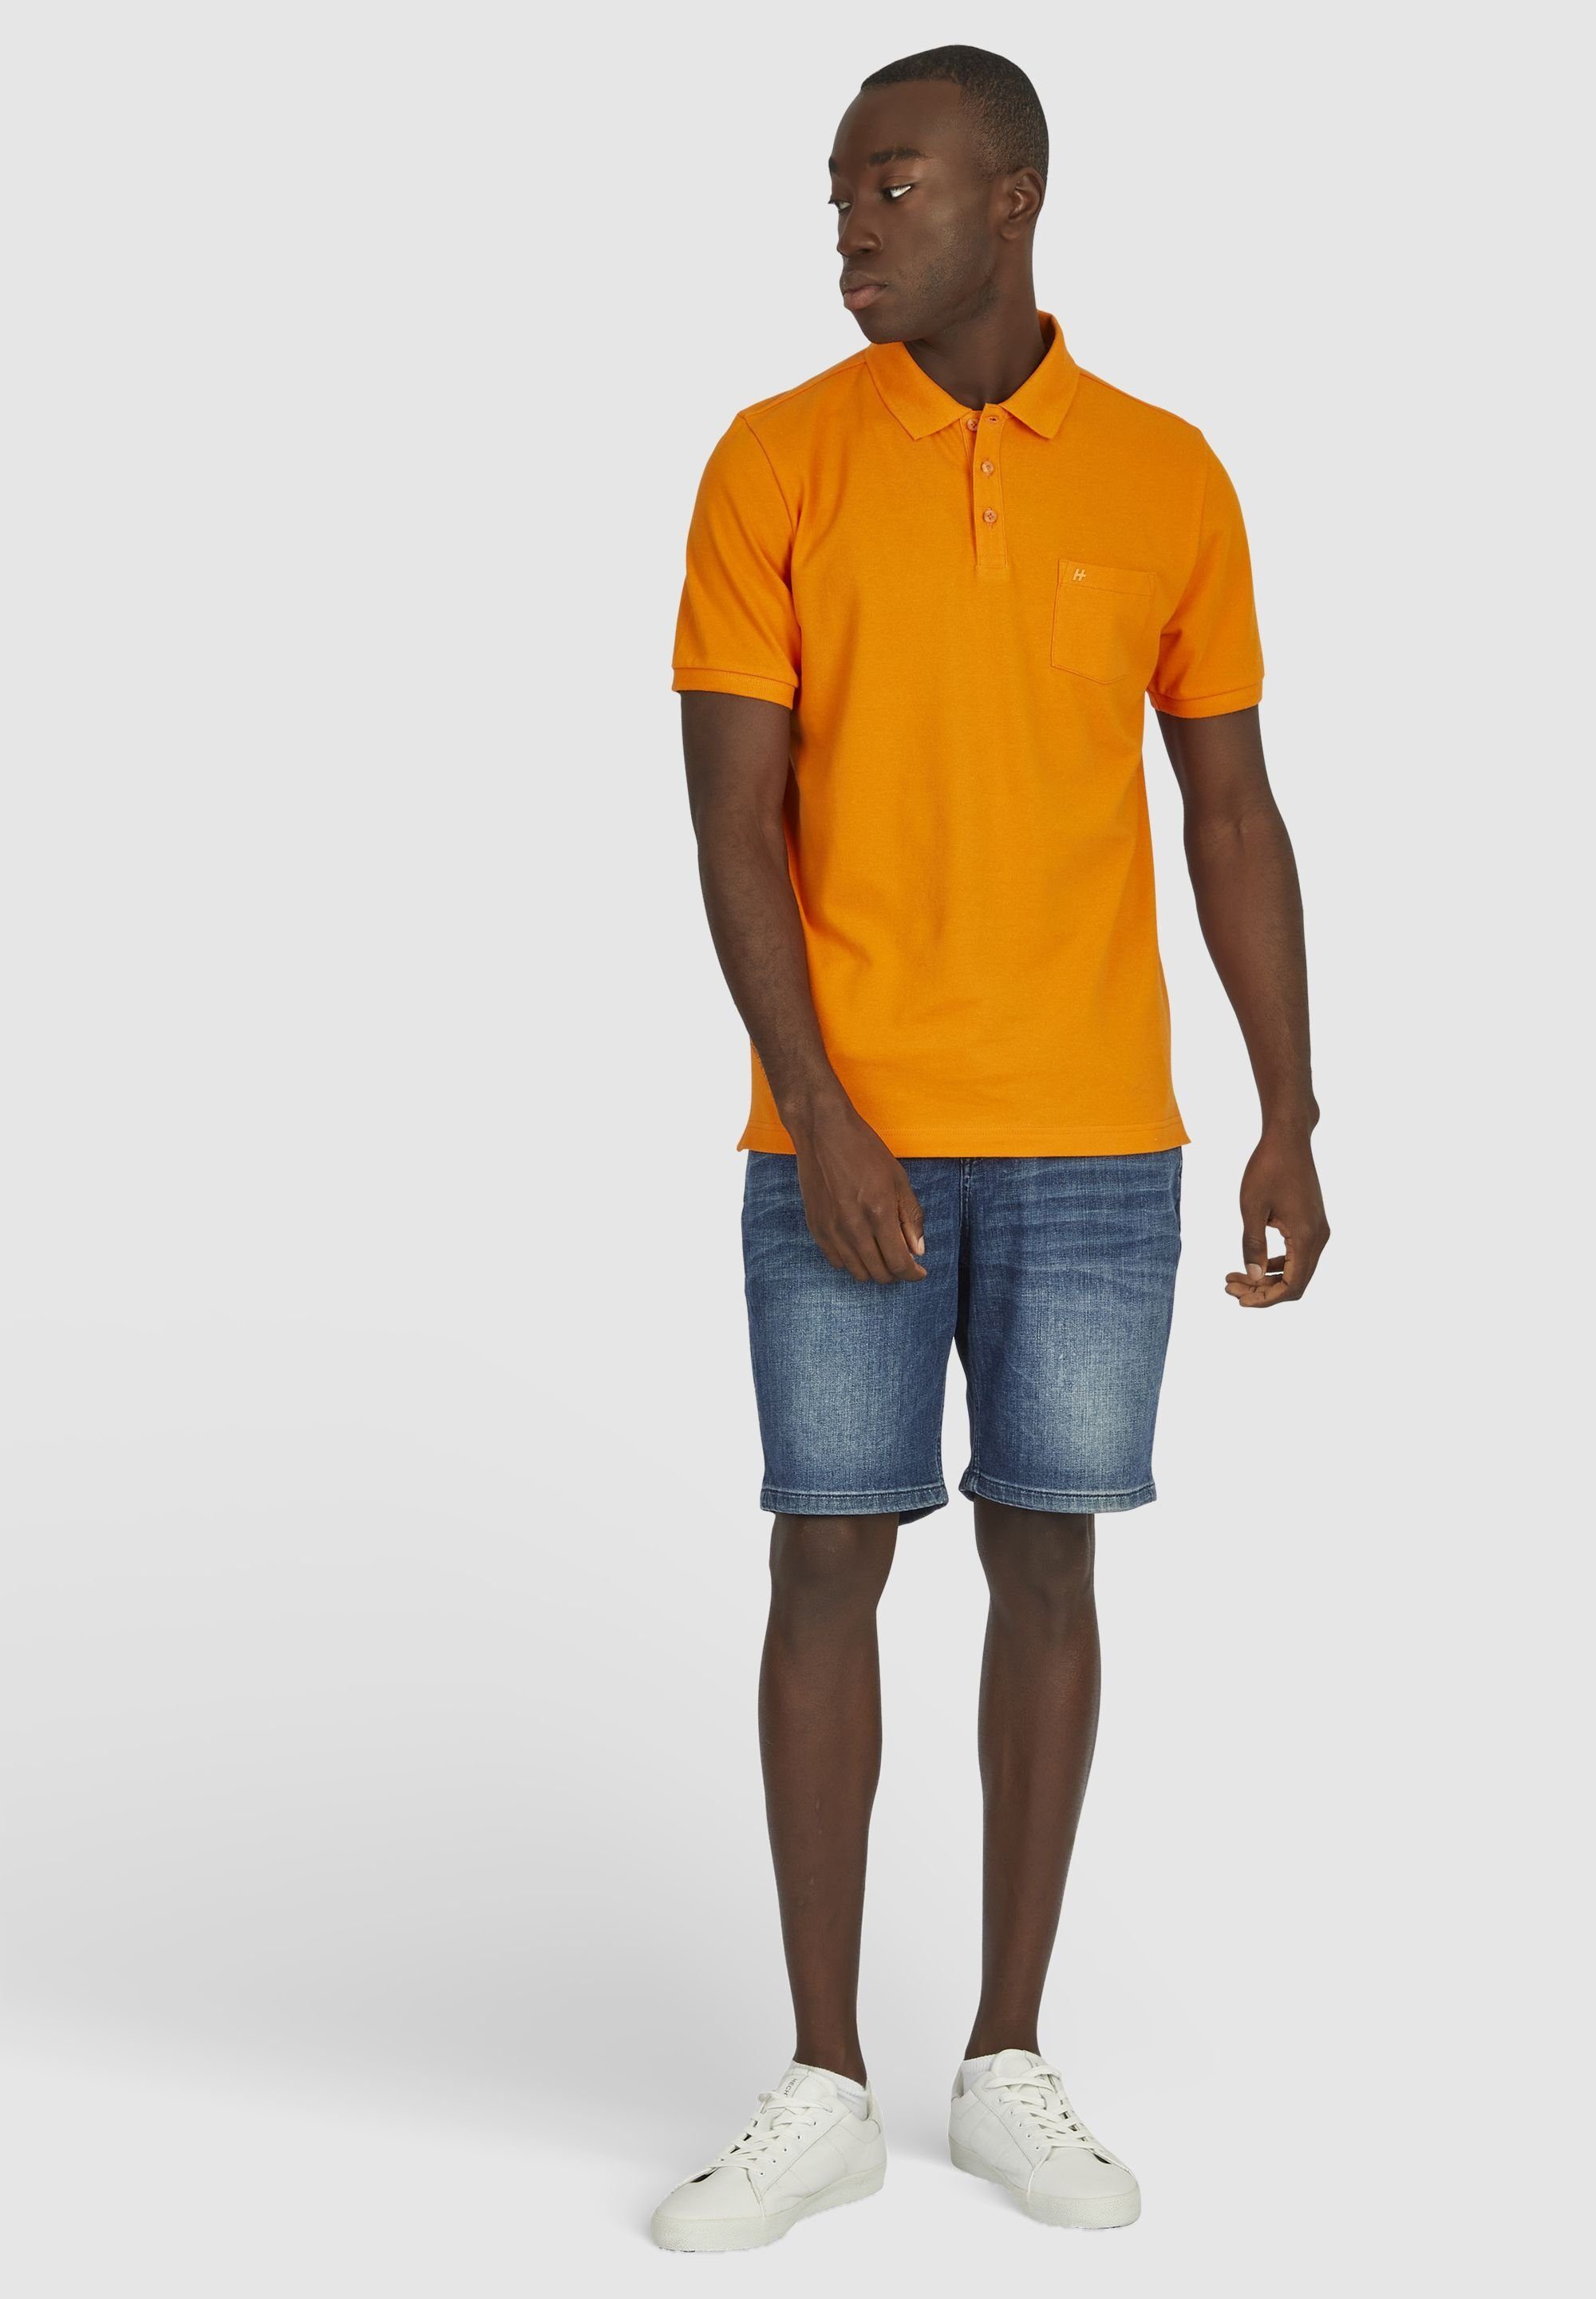 HECHTER PARIS Poloshirt orange mit polokrage